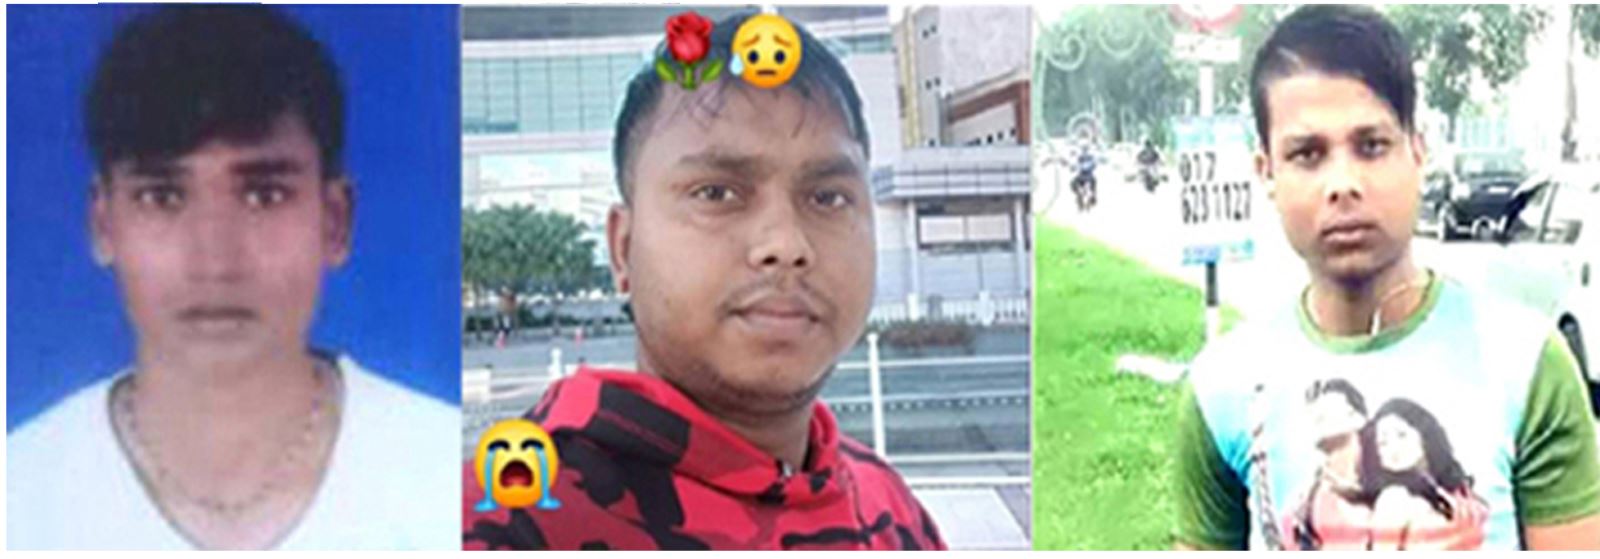 डेढ महिनाको अवधीमा सप्तरीका चार यूवकको मलेशियामा मृत्यु